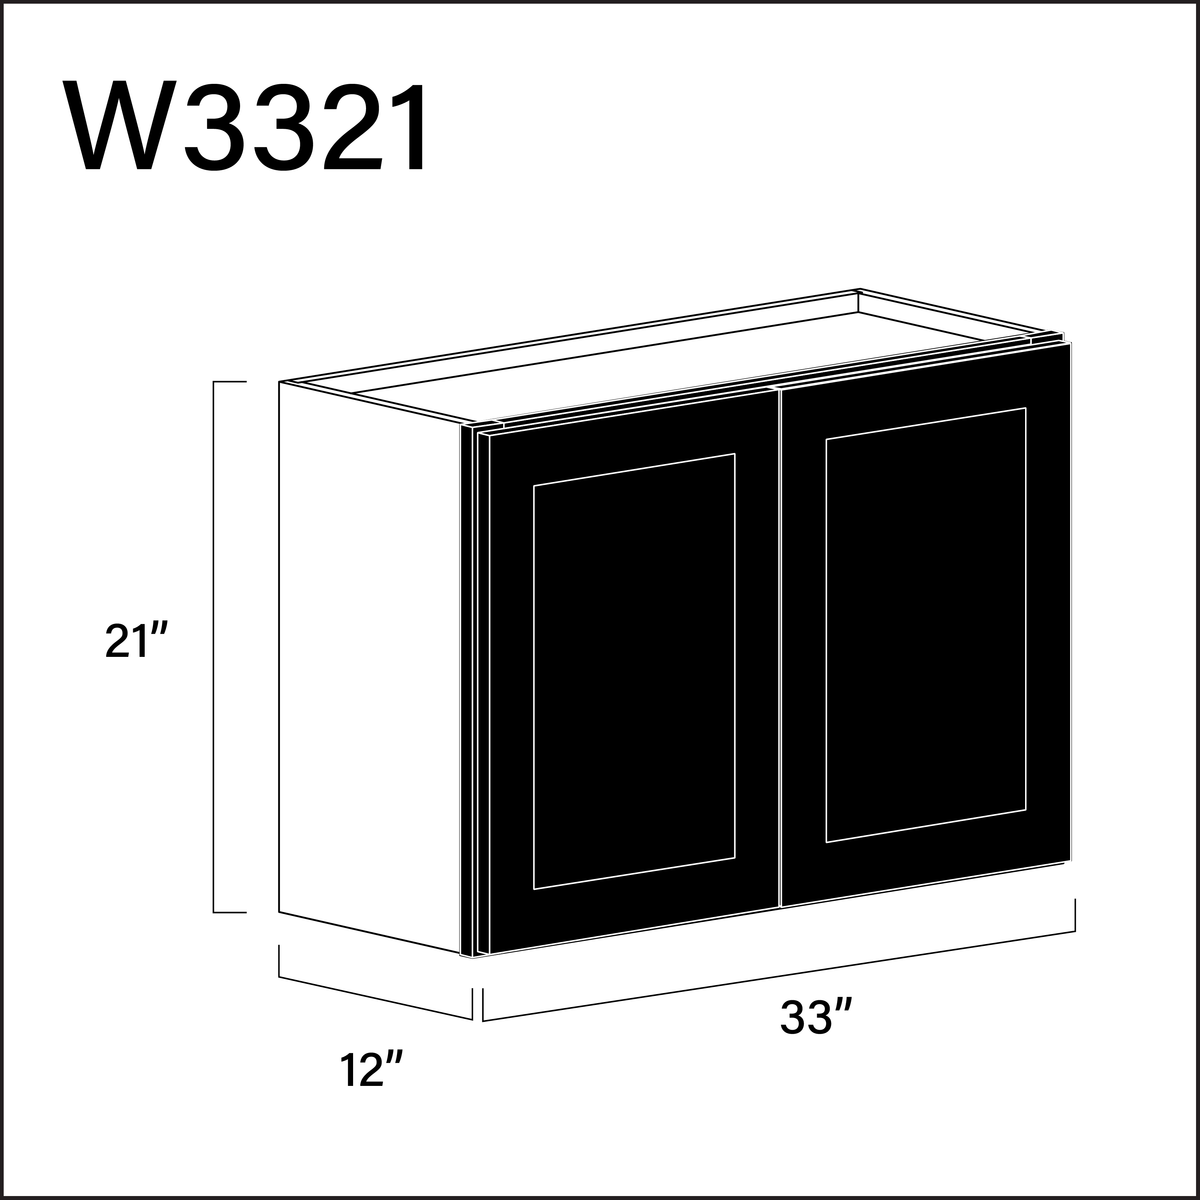 Black Shaker Double Door Wall Cabinet - 33" W x 21" H x 12" D